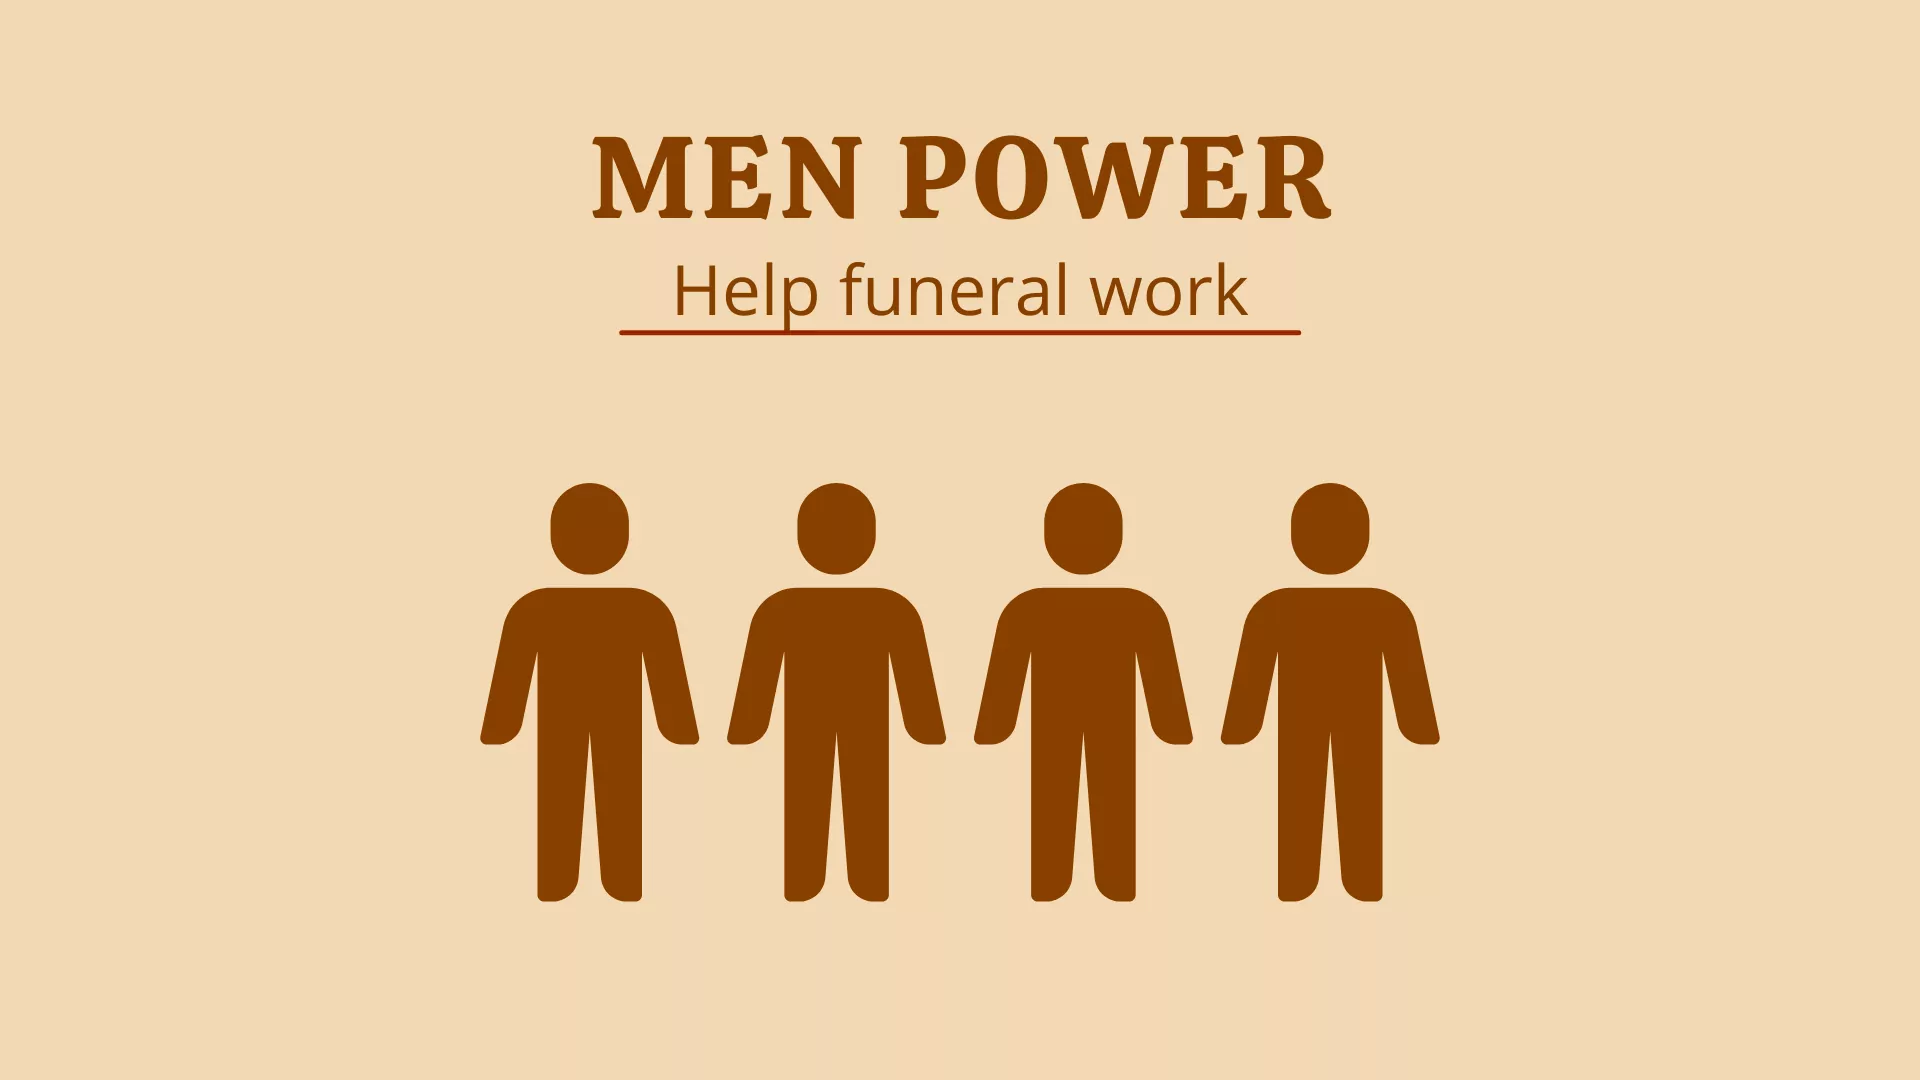 Funeral men power